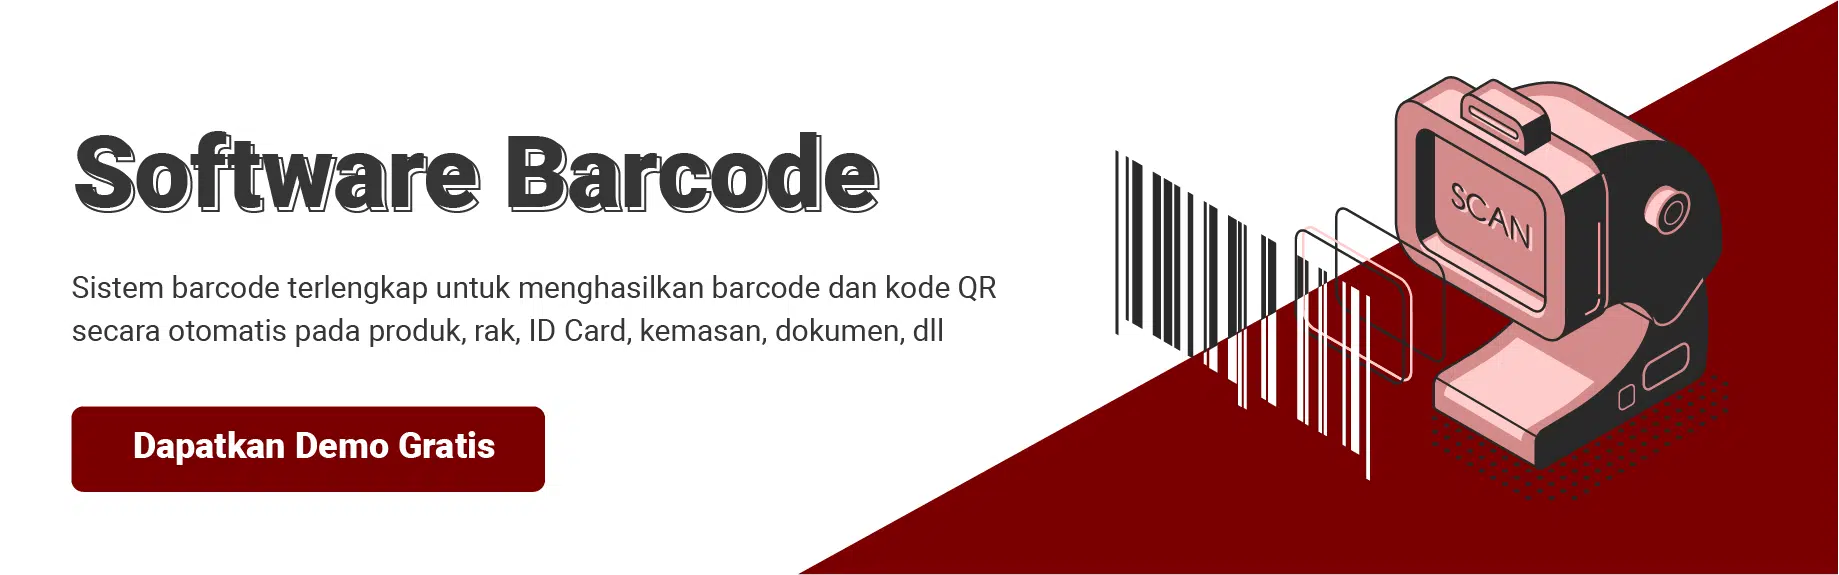 software barcode management